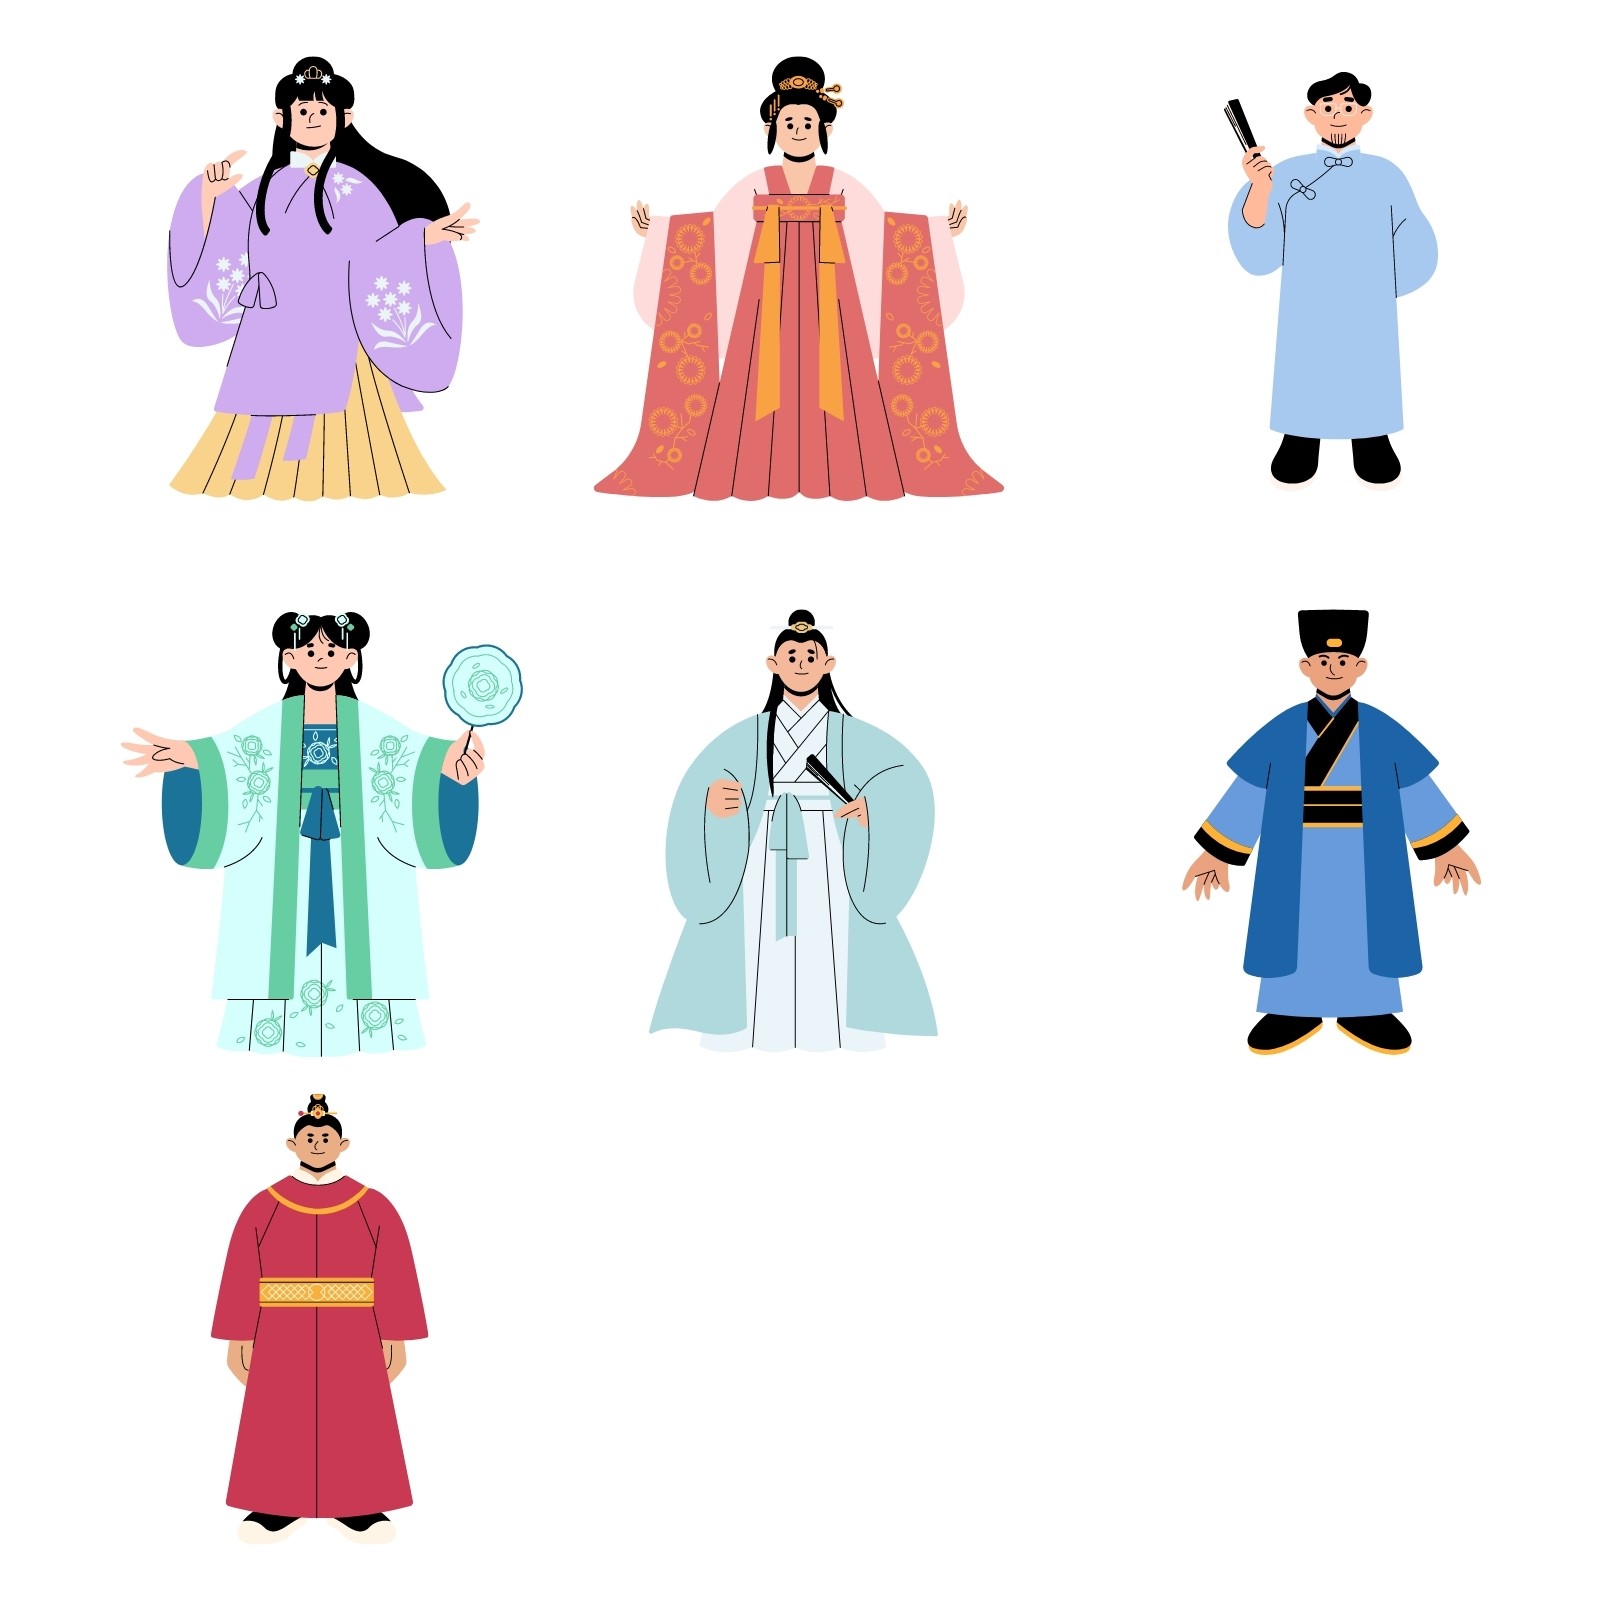 亚洲中国人物可爱平面插画元素 - 模板 - Canva可画